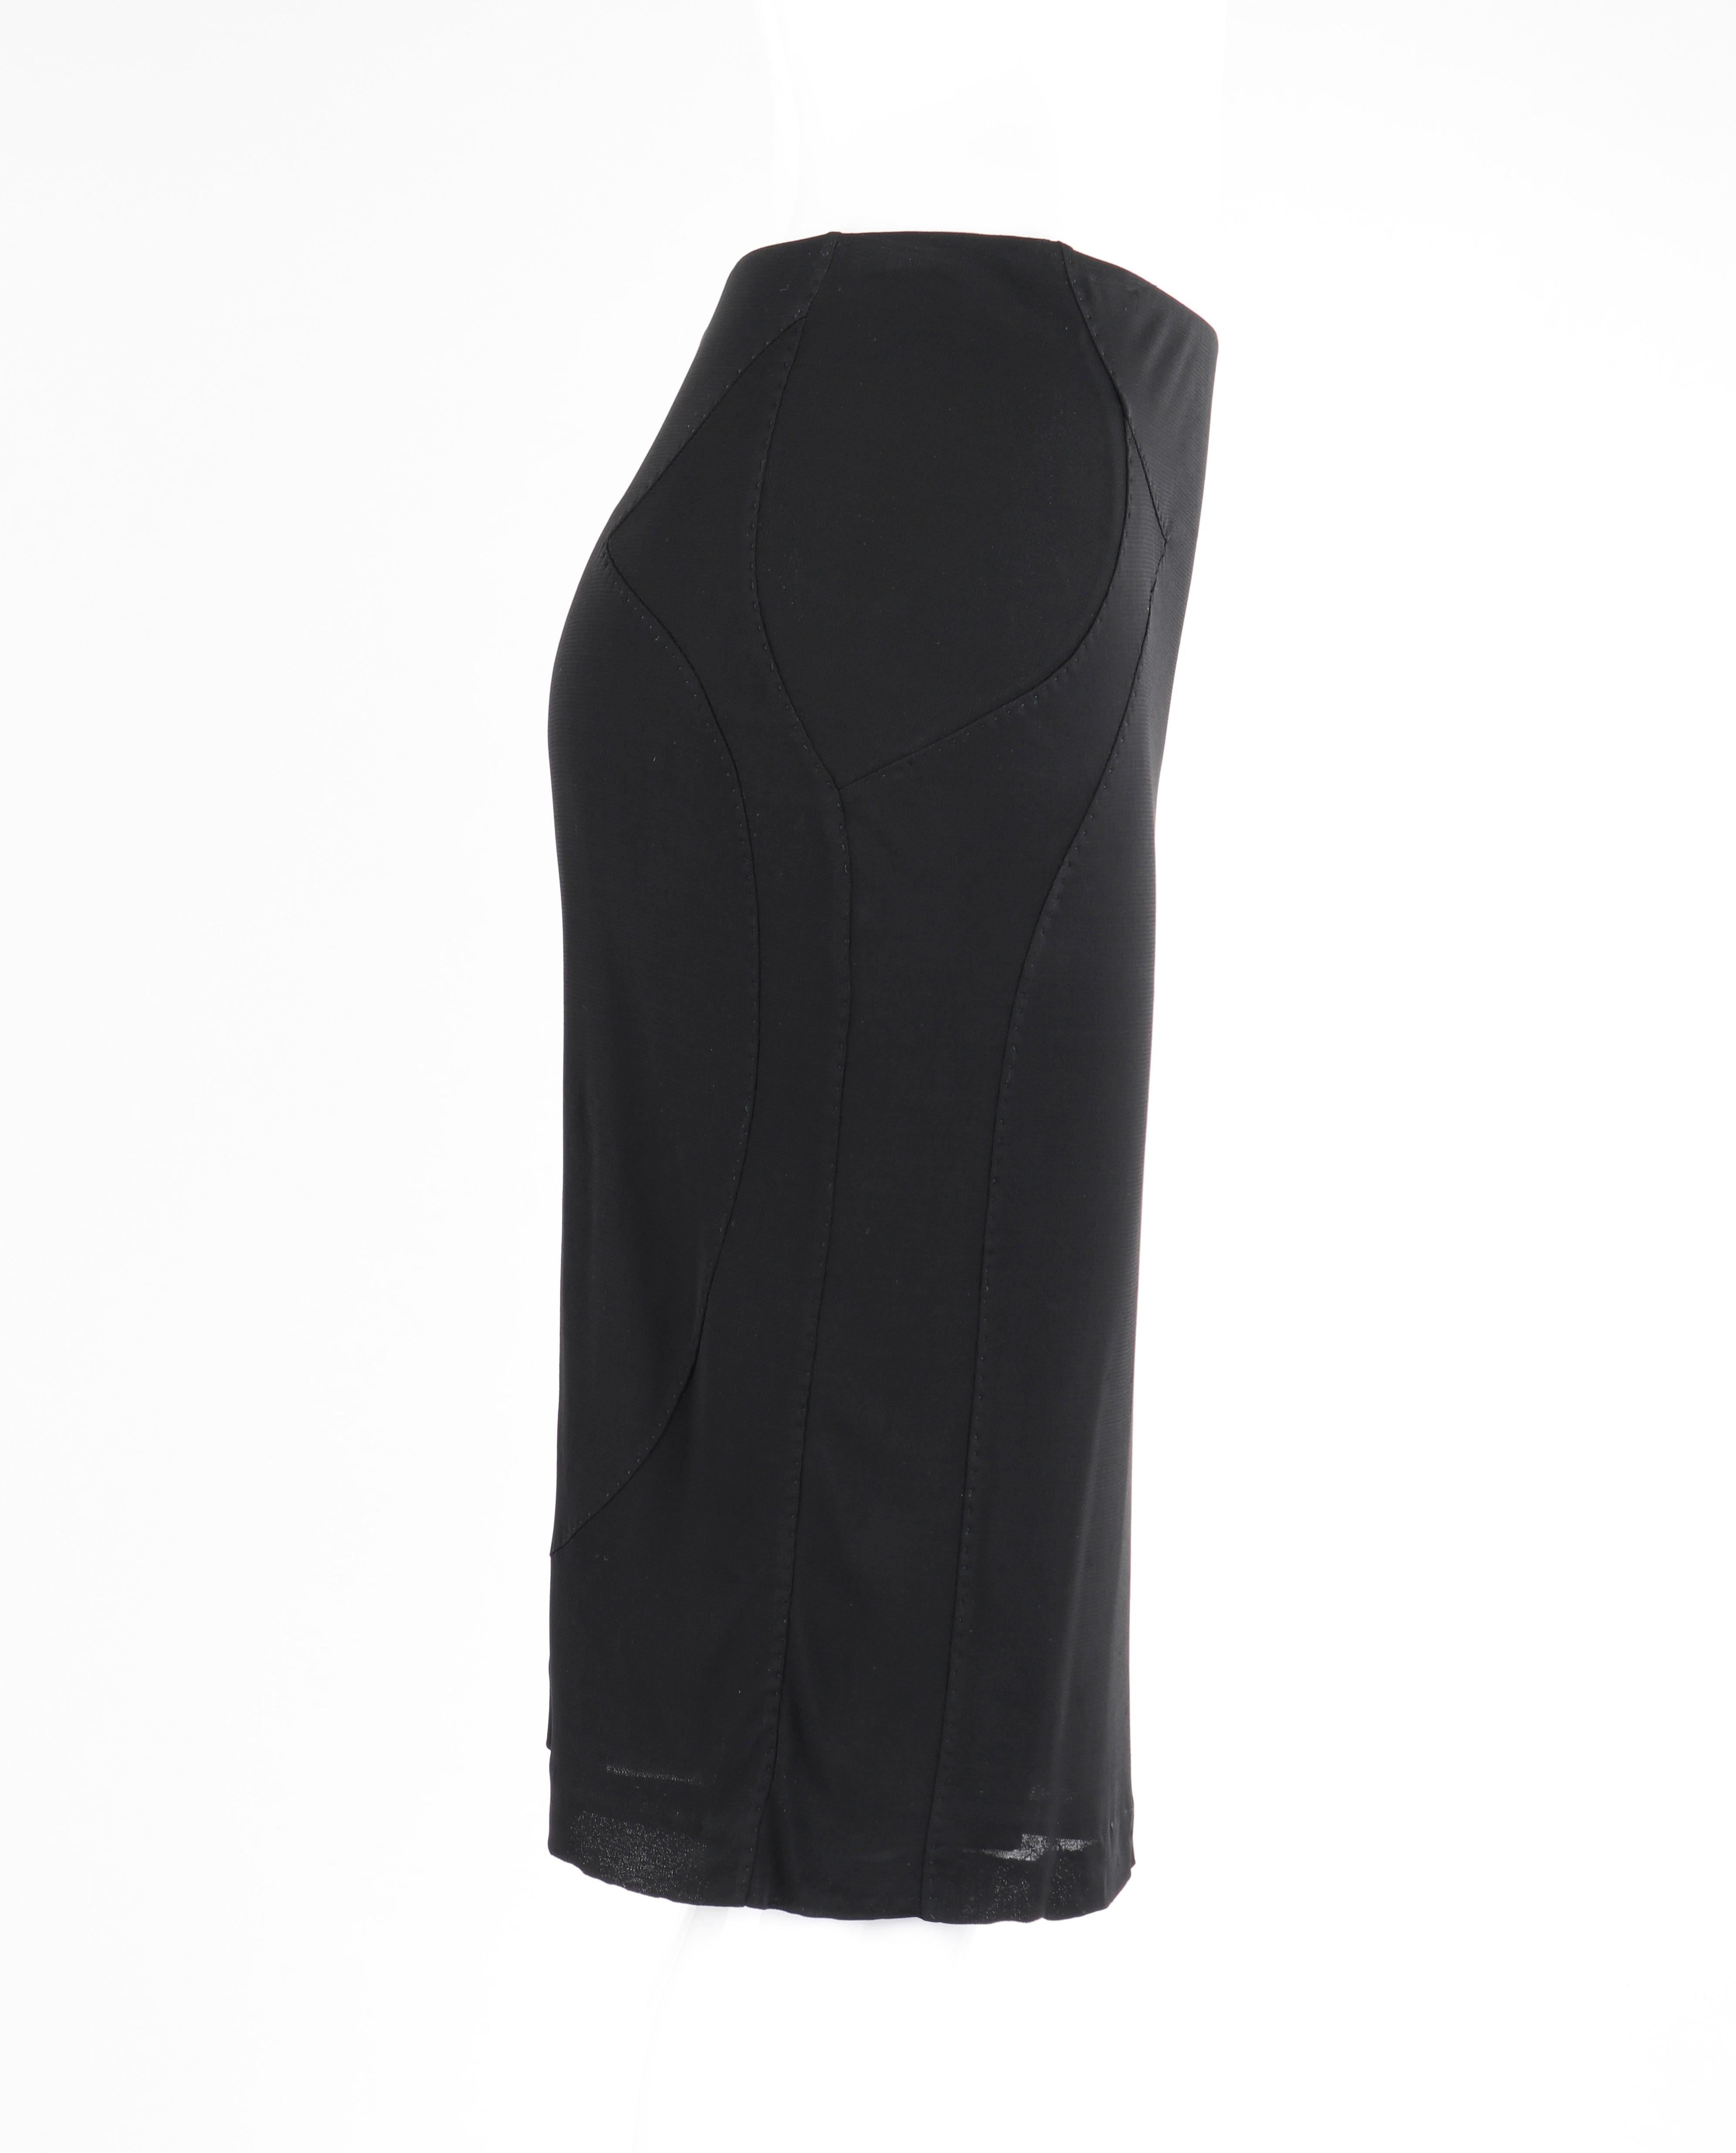 YVES SAINT LAURENT Tom Ford S/S 2003 2 Pc Black Top Skirt Dress Set YSL For Sale 1